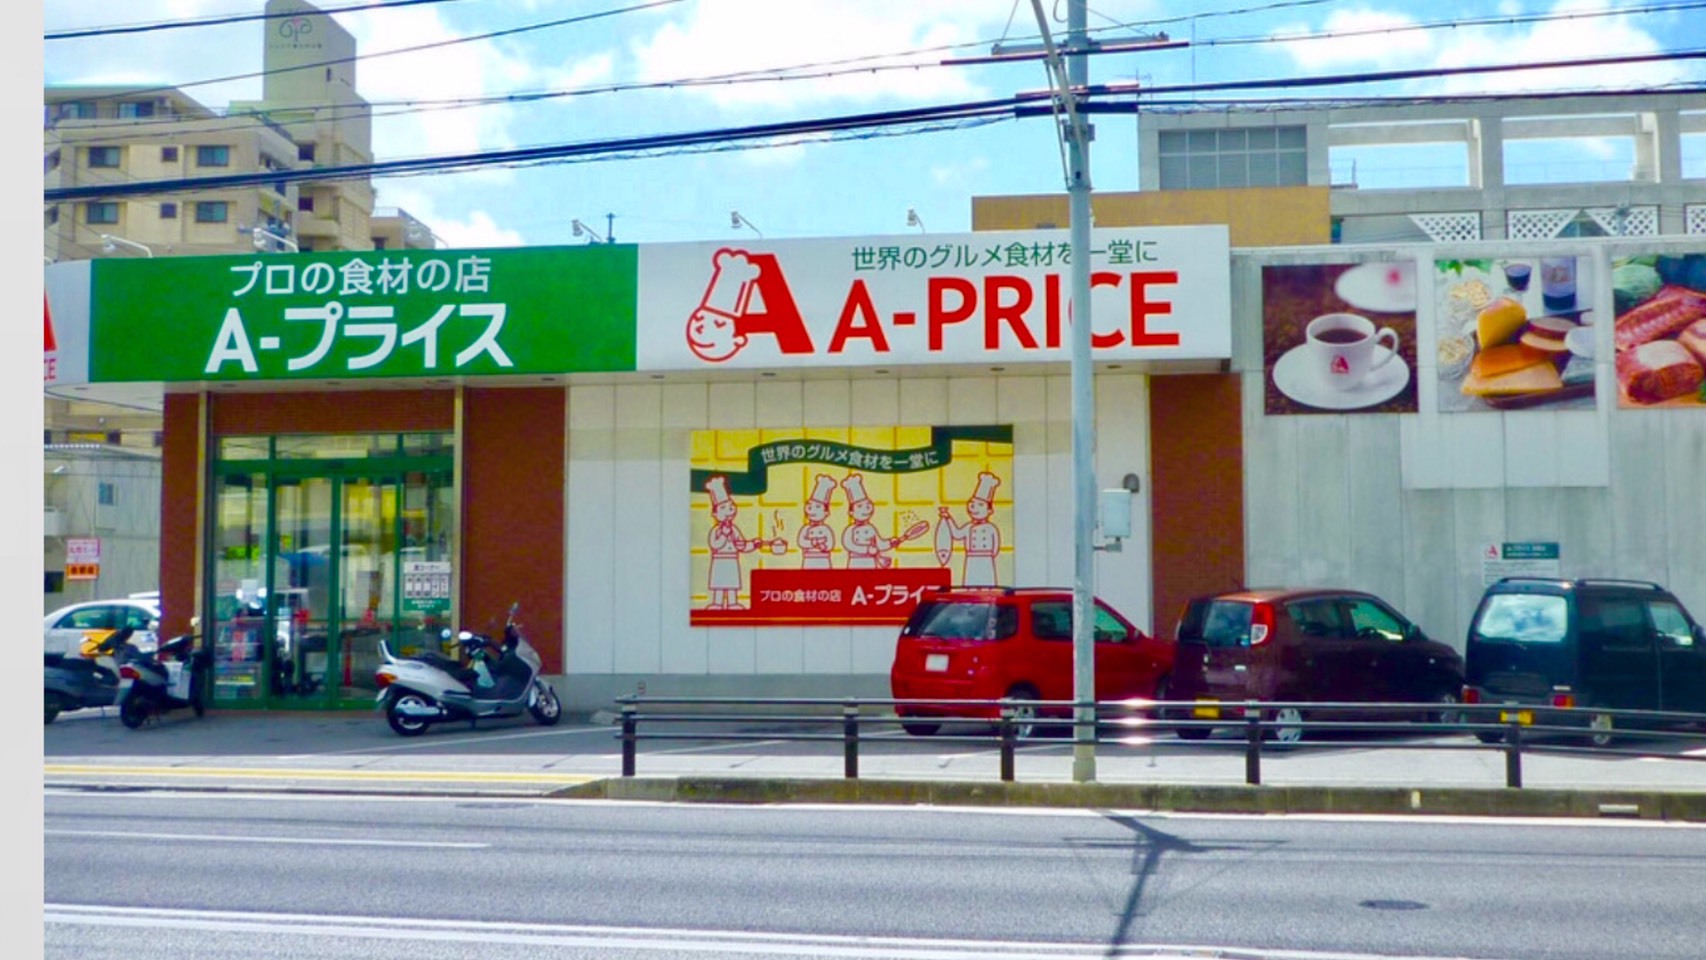 建物のすぐ隣に業務用スーパーの「A-price」があります